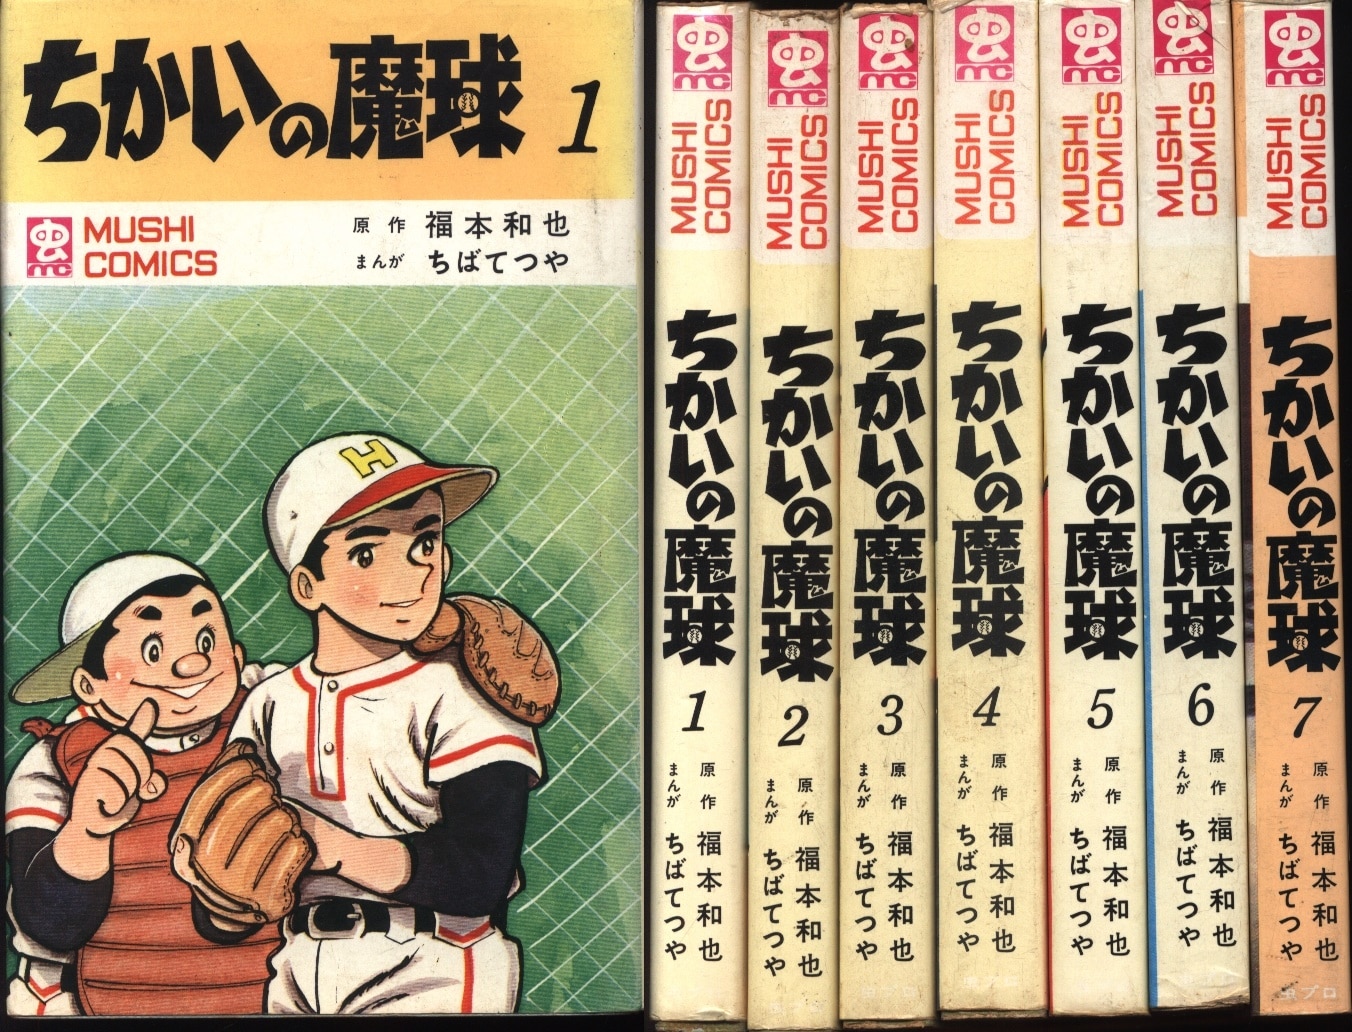 虫プロ商事 虫コミックス ちばてつや・福本和也 ちかいの魔球全7巻